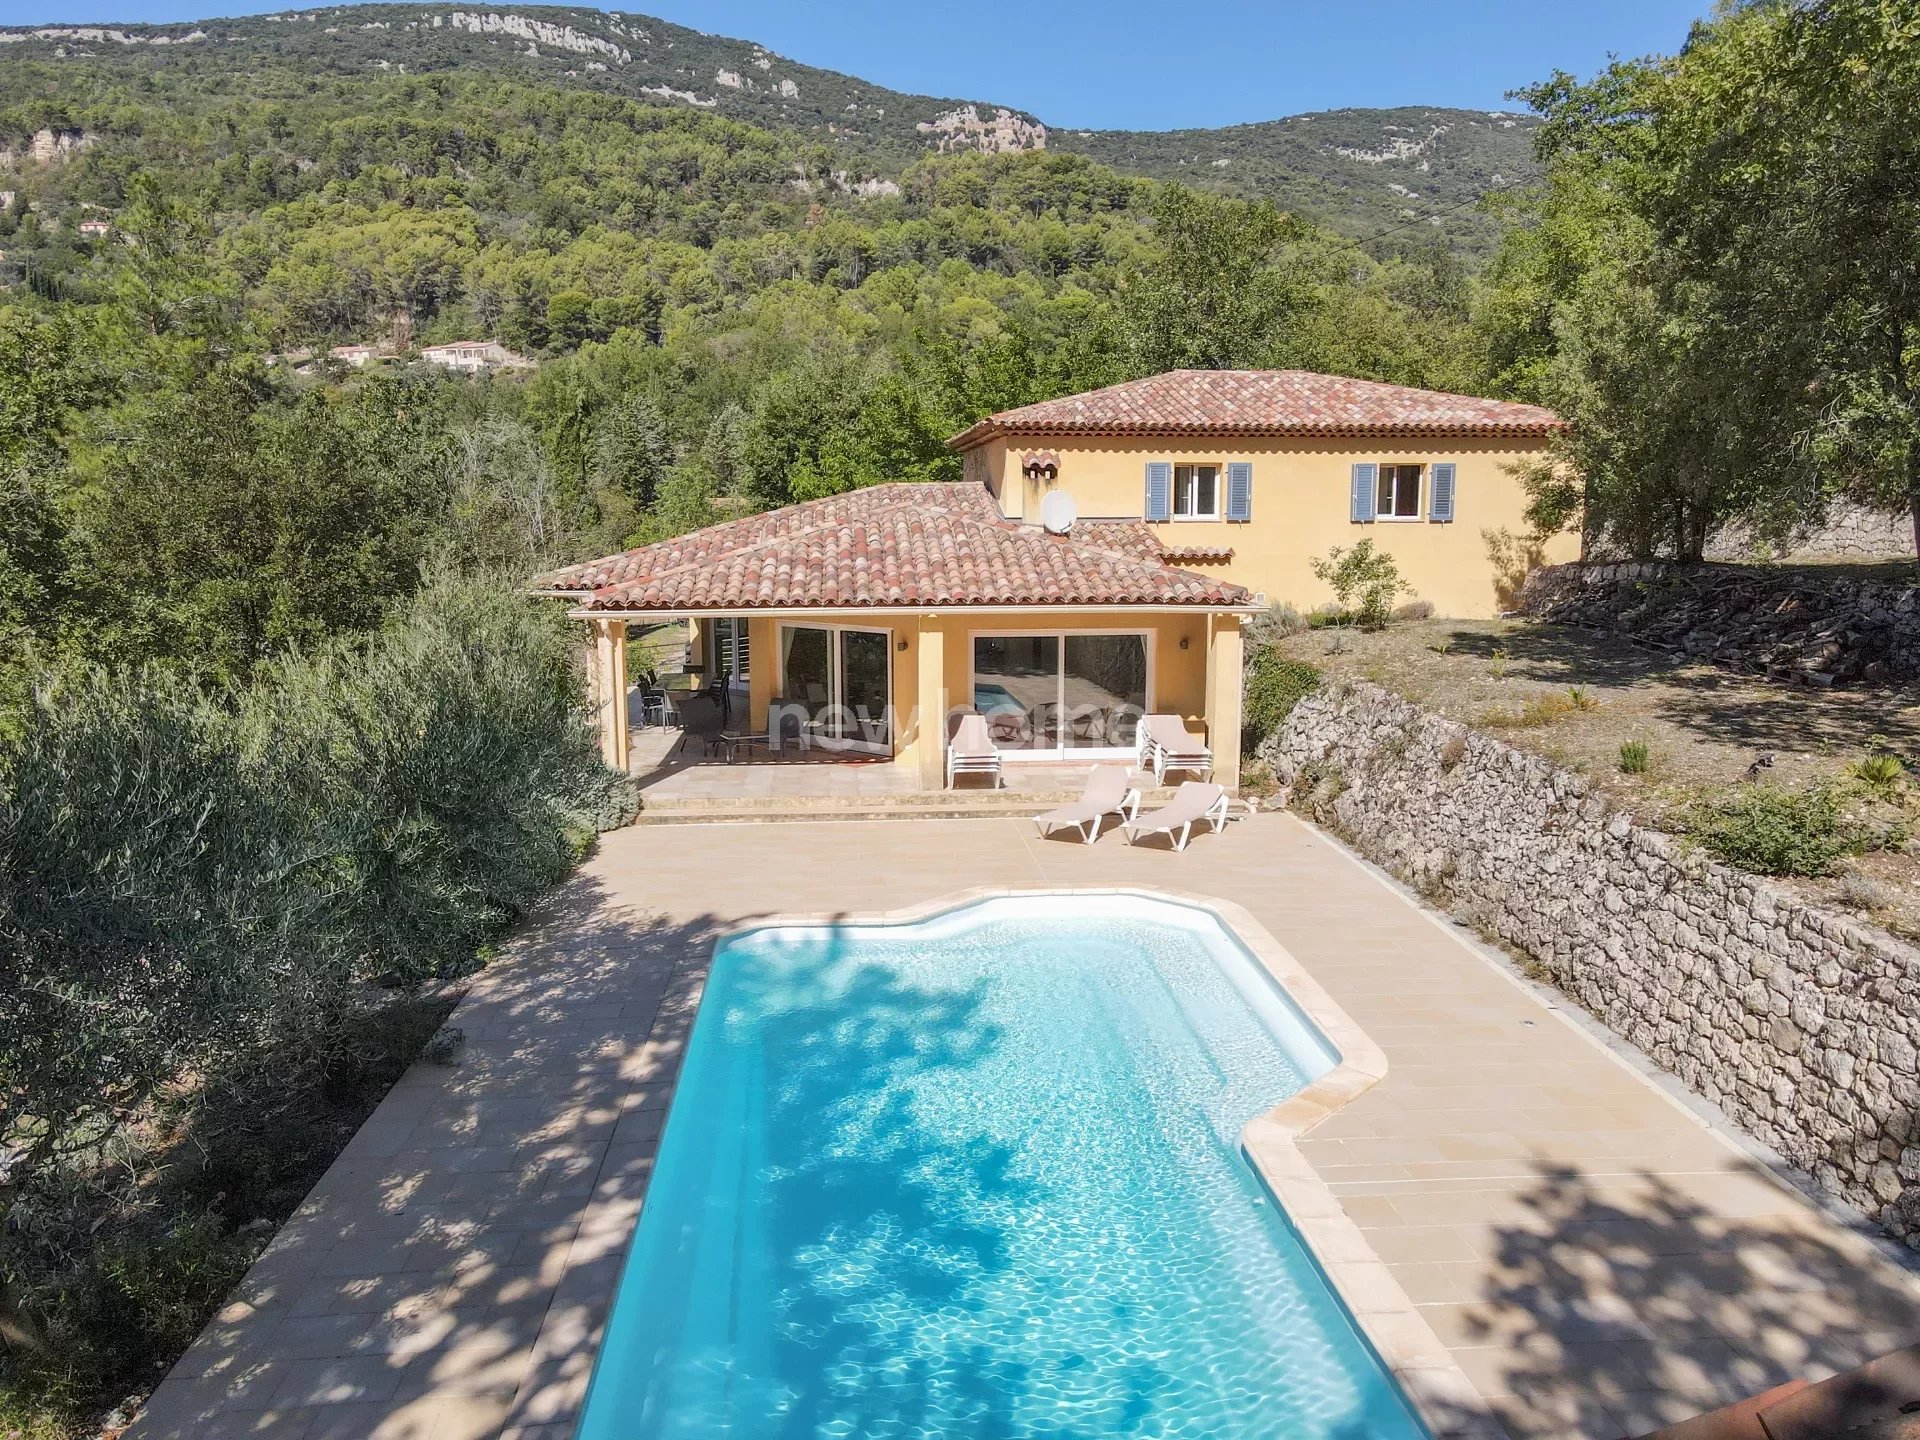 Spacieuse villa en parfait état avec piscine chauffée